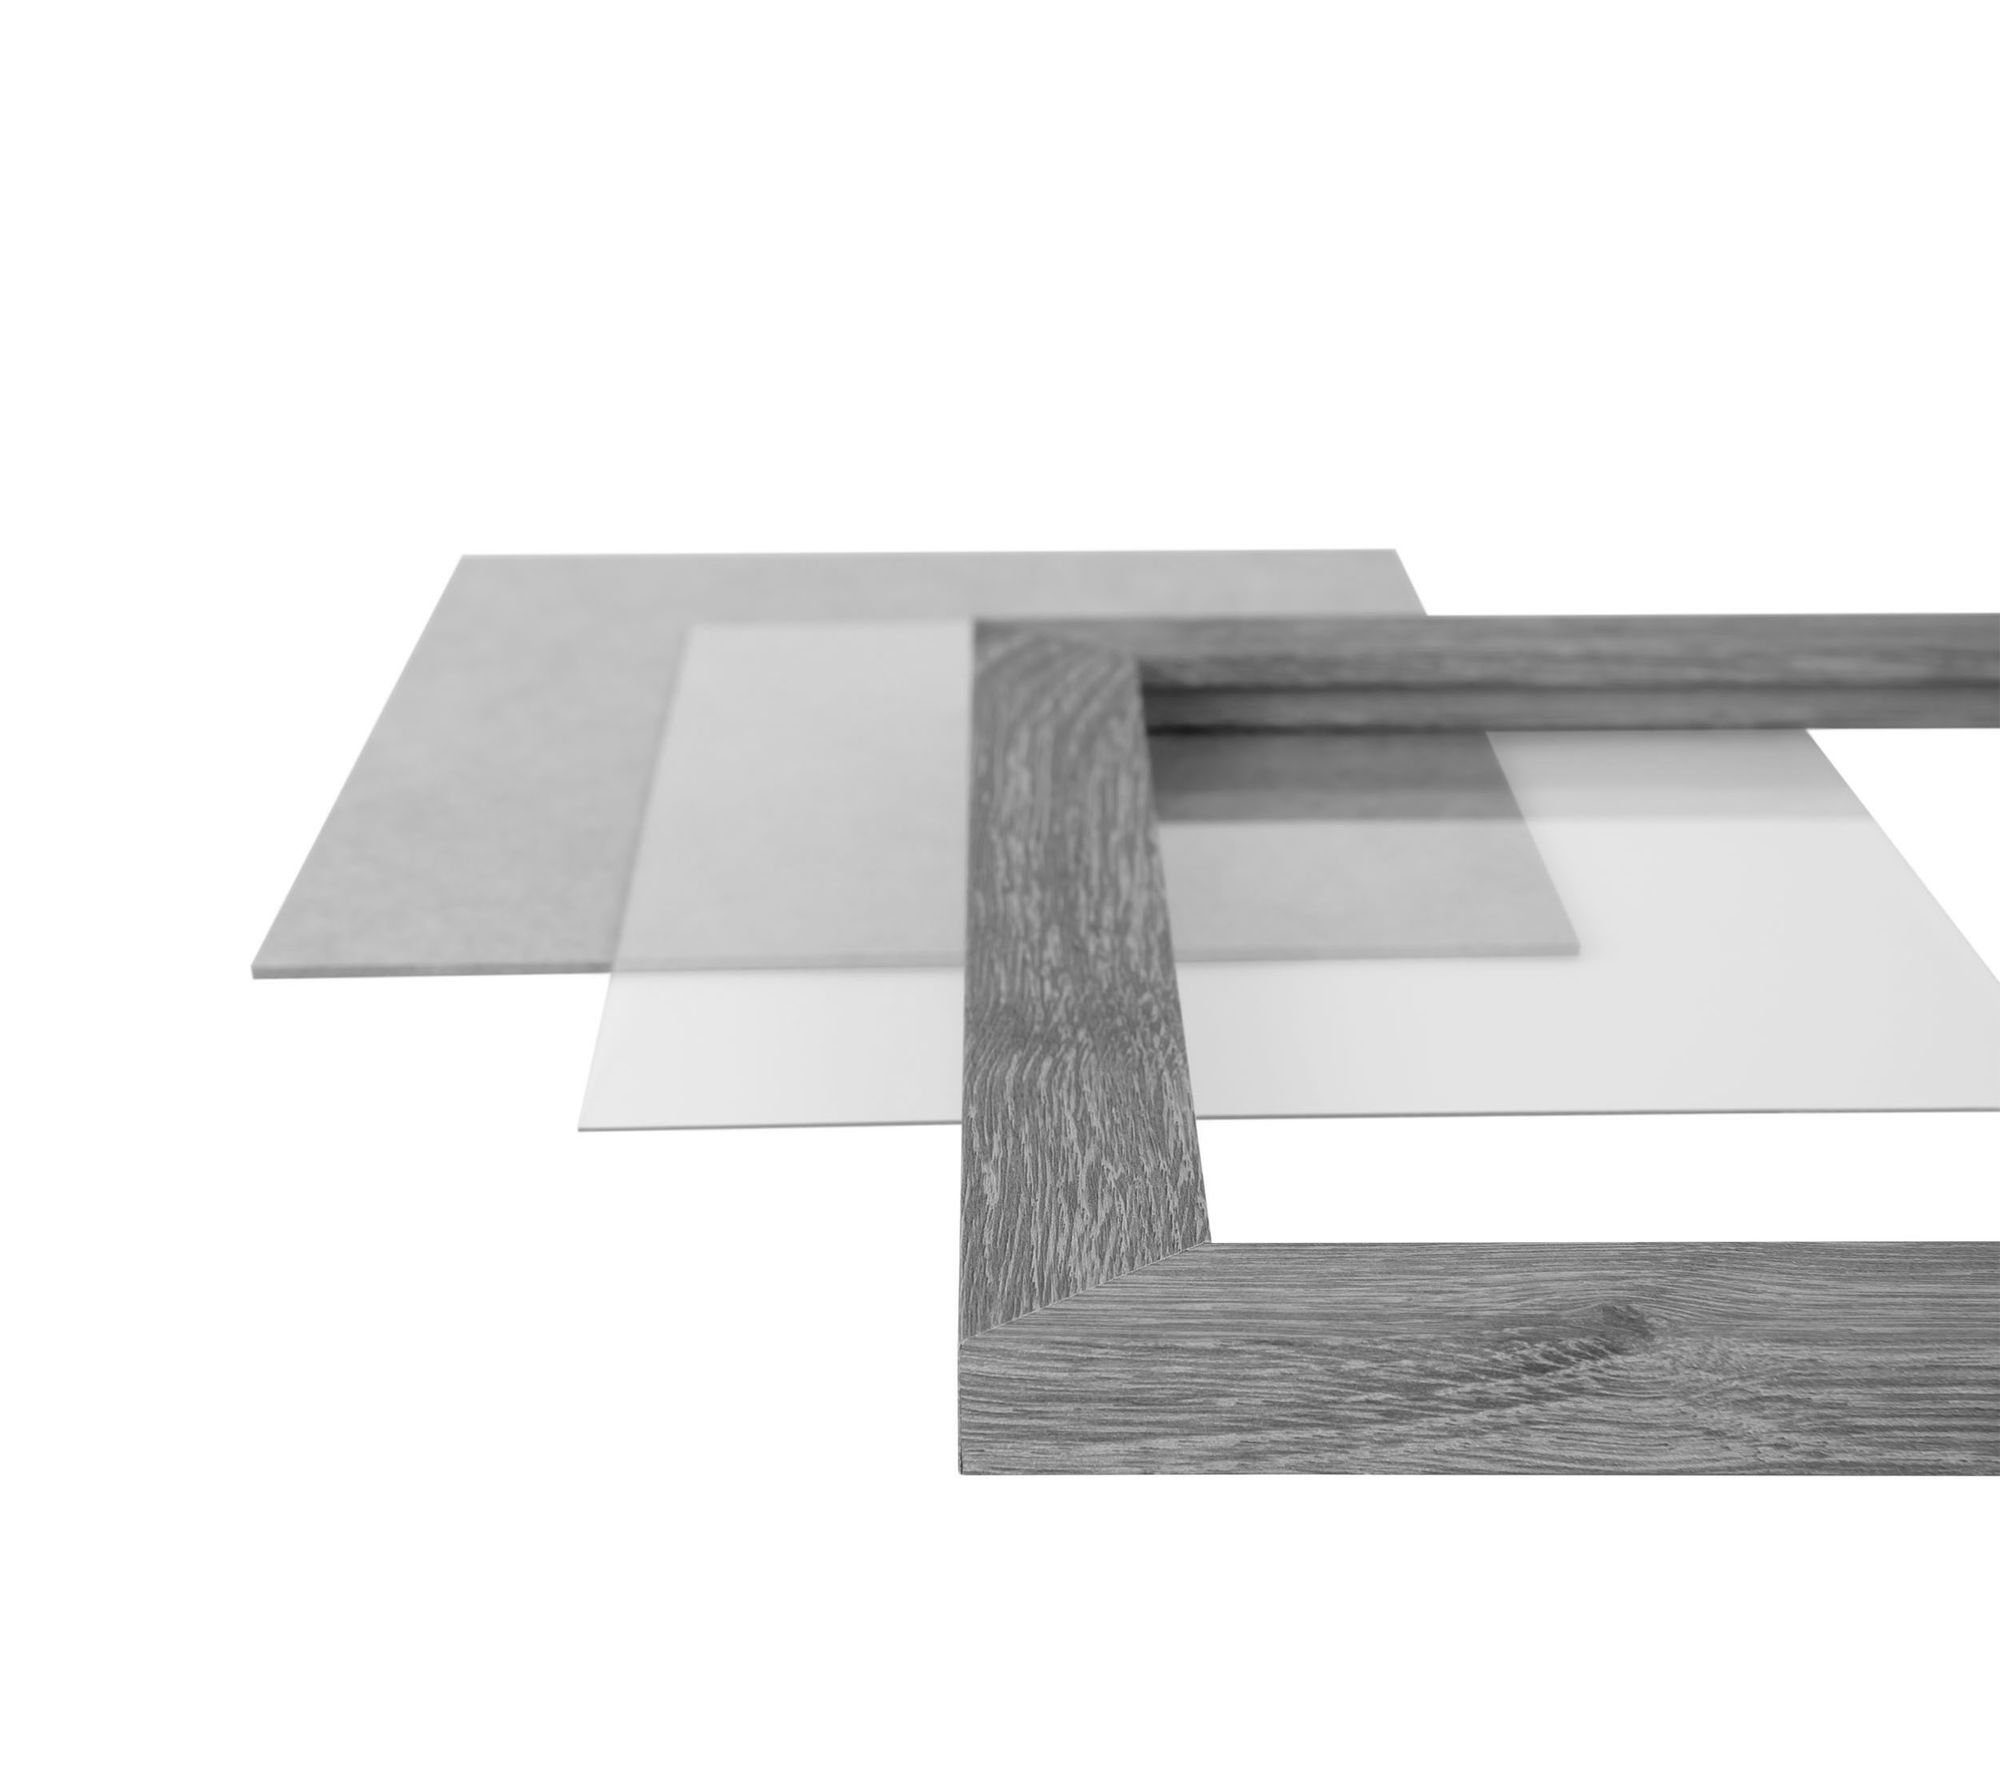 Clamaro 80x120 Aufhänger handgefertigt Holz FSC® Moderner CLAMARO 'Collage' schwarz eckiger matt und in inkl. Bilderrahmen nach Acrylglas, MDF Maß Bilderrahmen Rahmen Rückwand